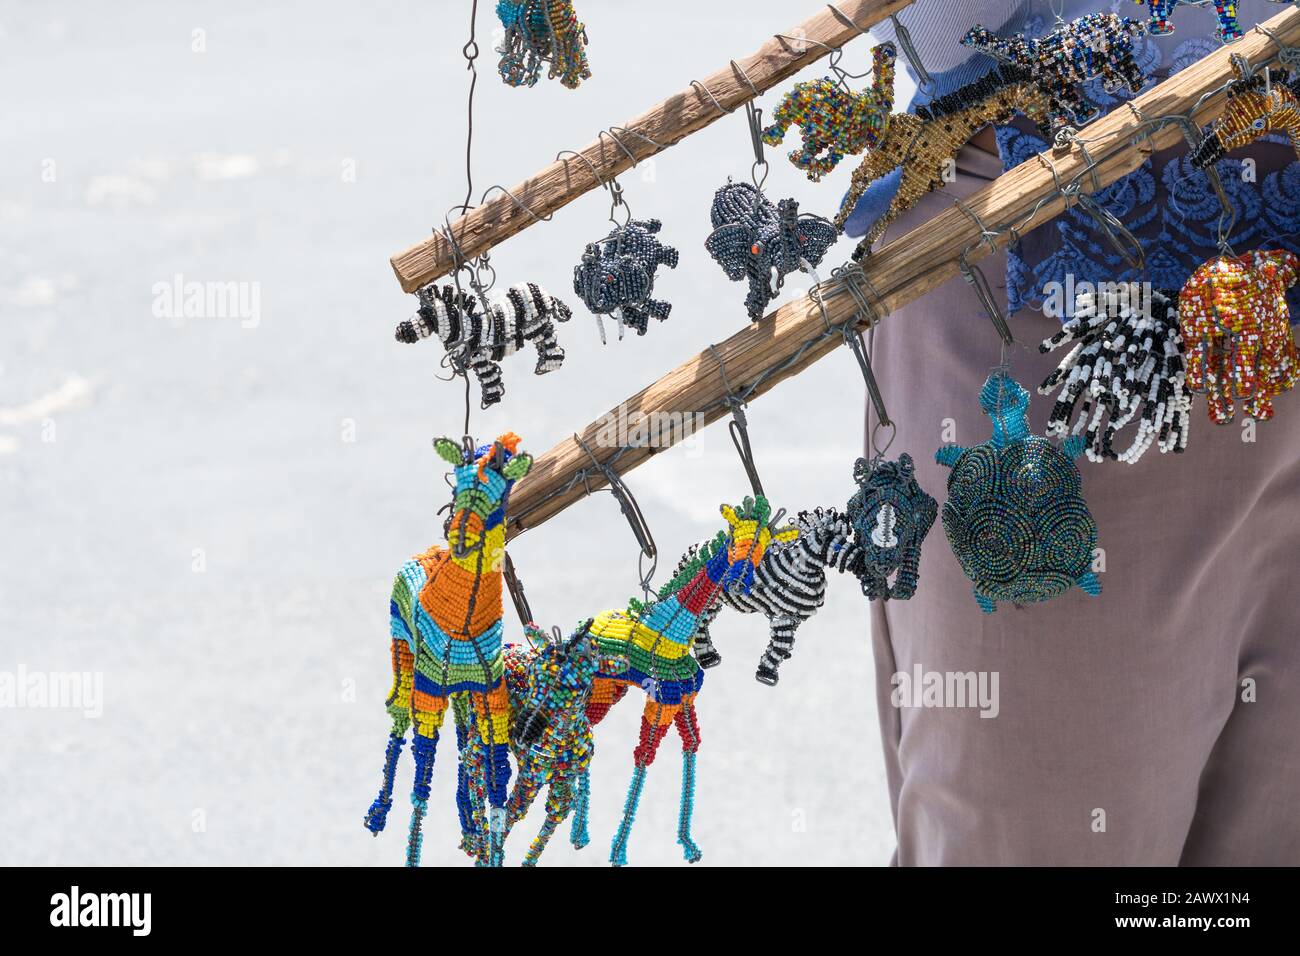 Traditionelles handgemachtes afrikanisches Kunsthandwerk, Souvenirs, Erinnerungsstücke, Kurios, Schmuckstücke, die an einem Gebäude hängen, das vom Straßenhändler in Kapstadt, Südafrika gehalten wird Stockfoto